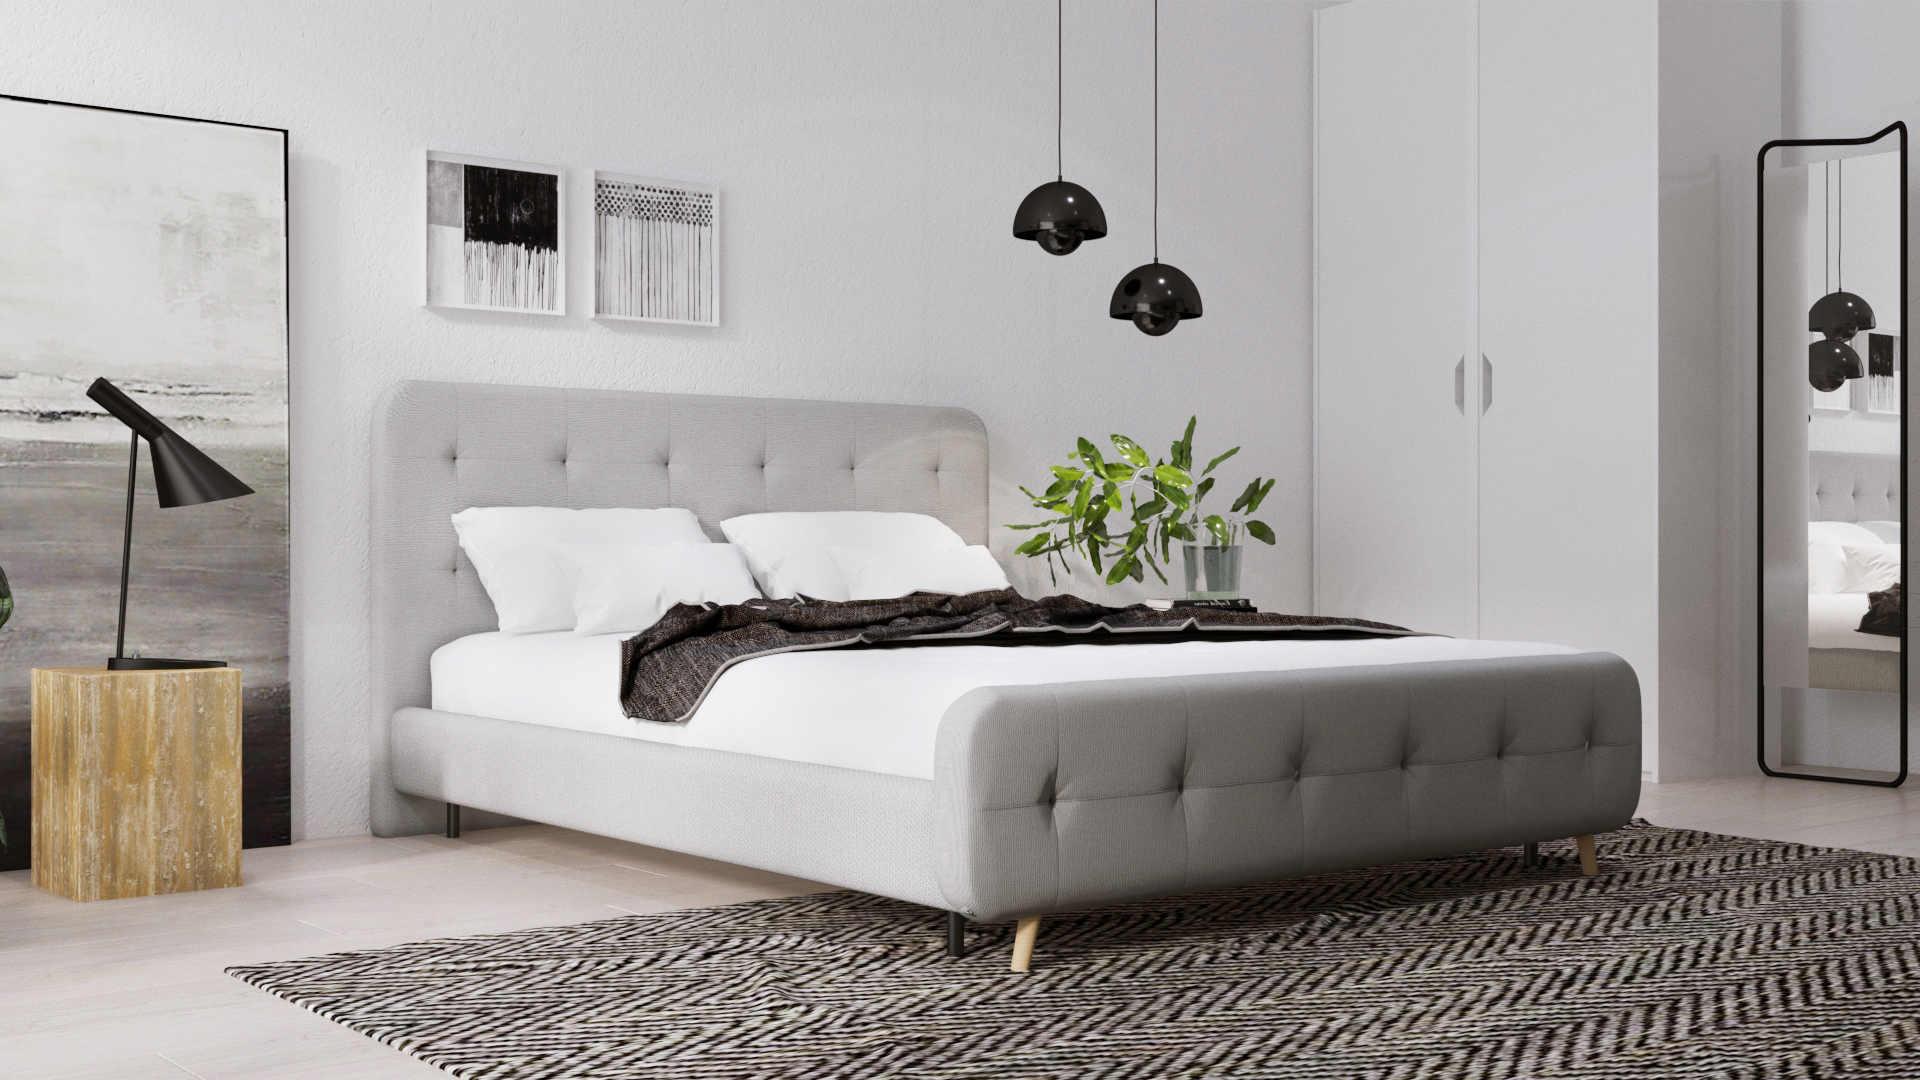 klep Dakraam Nieuwjaar Deco-tips 5 Diiiz tweepersoonsbedden voor een trendy slaapkamer